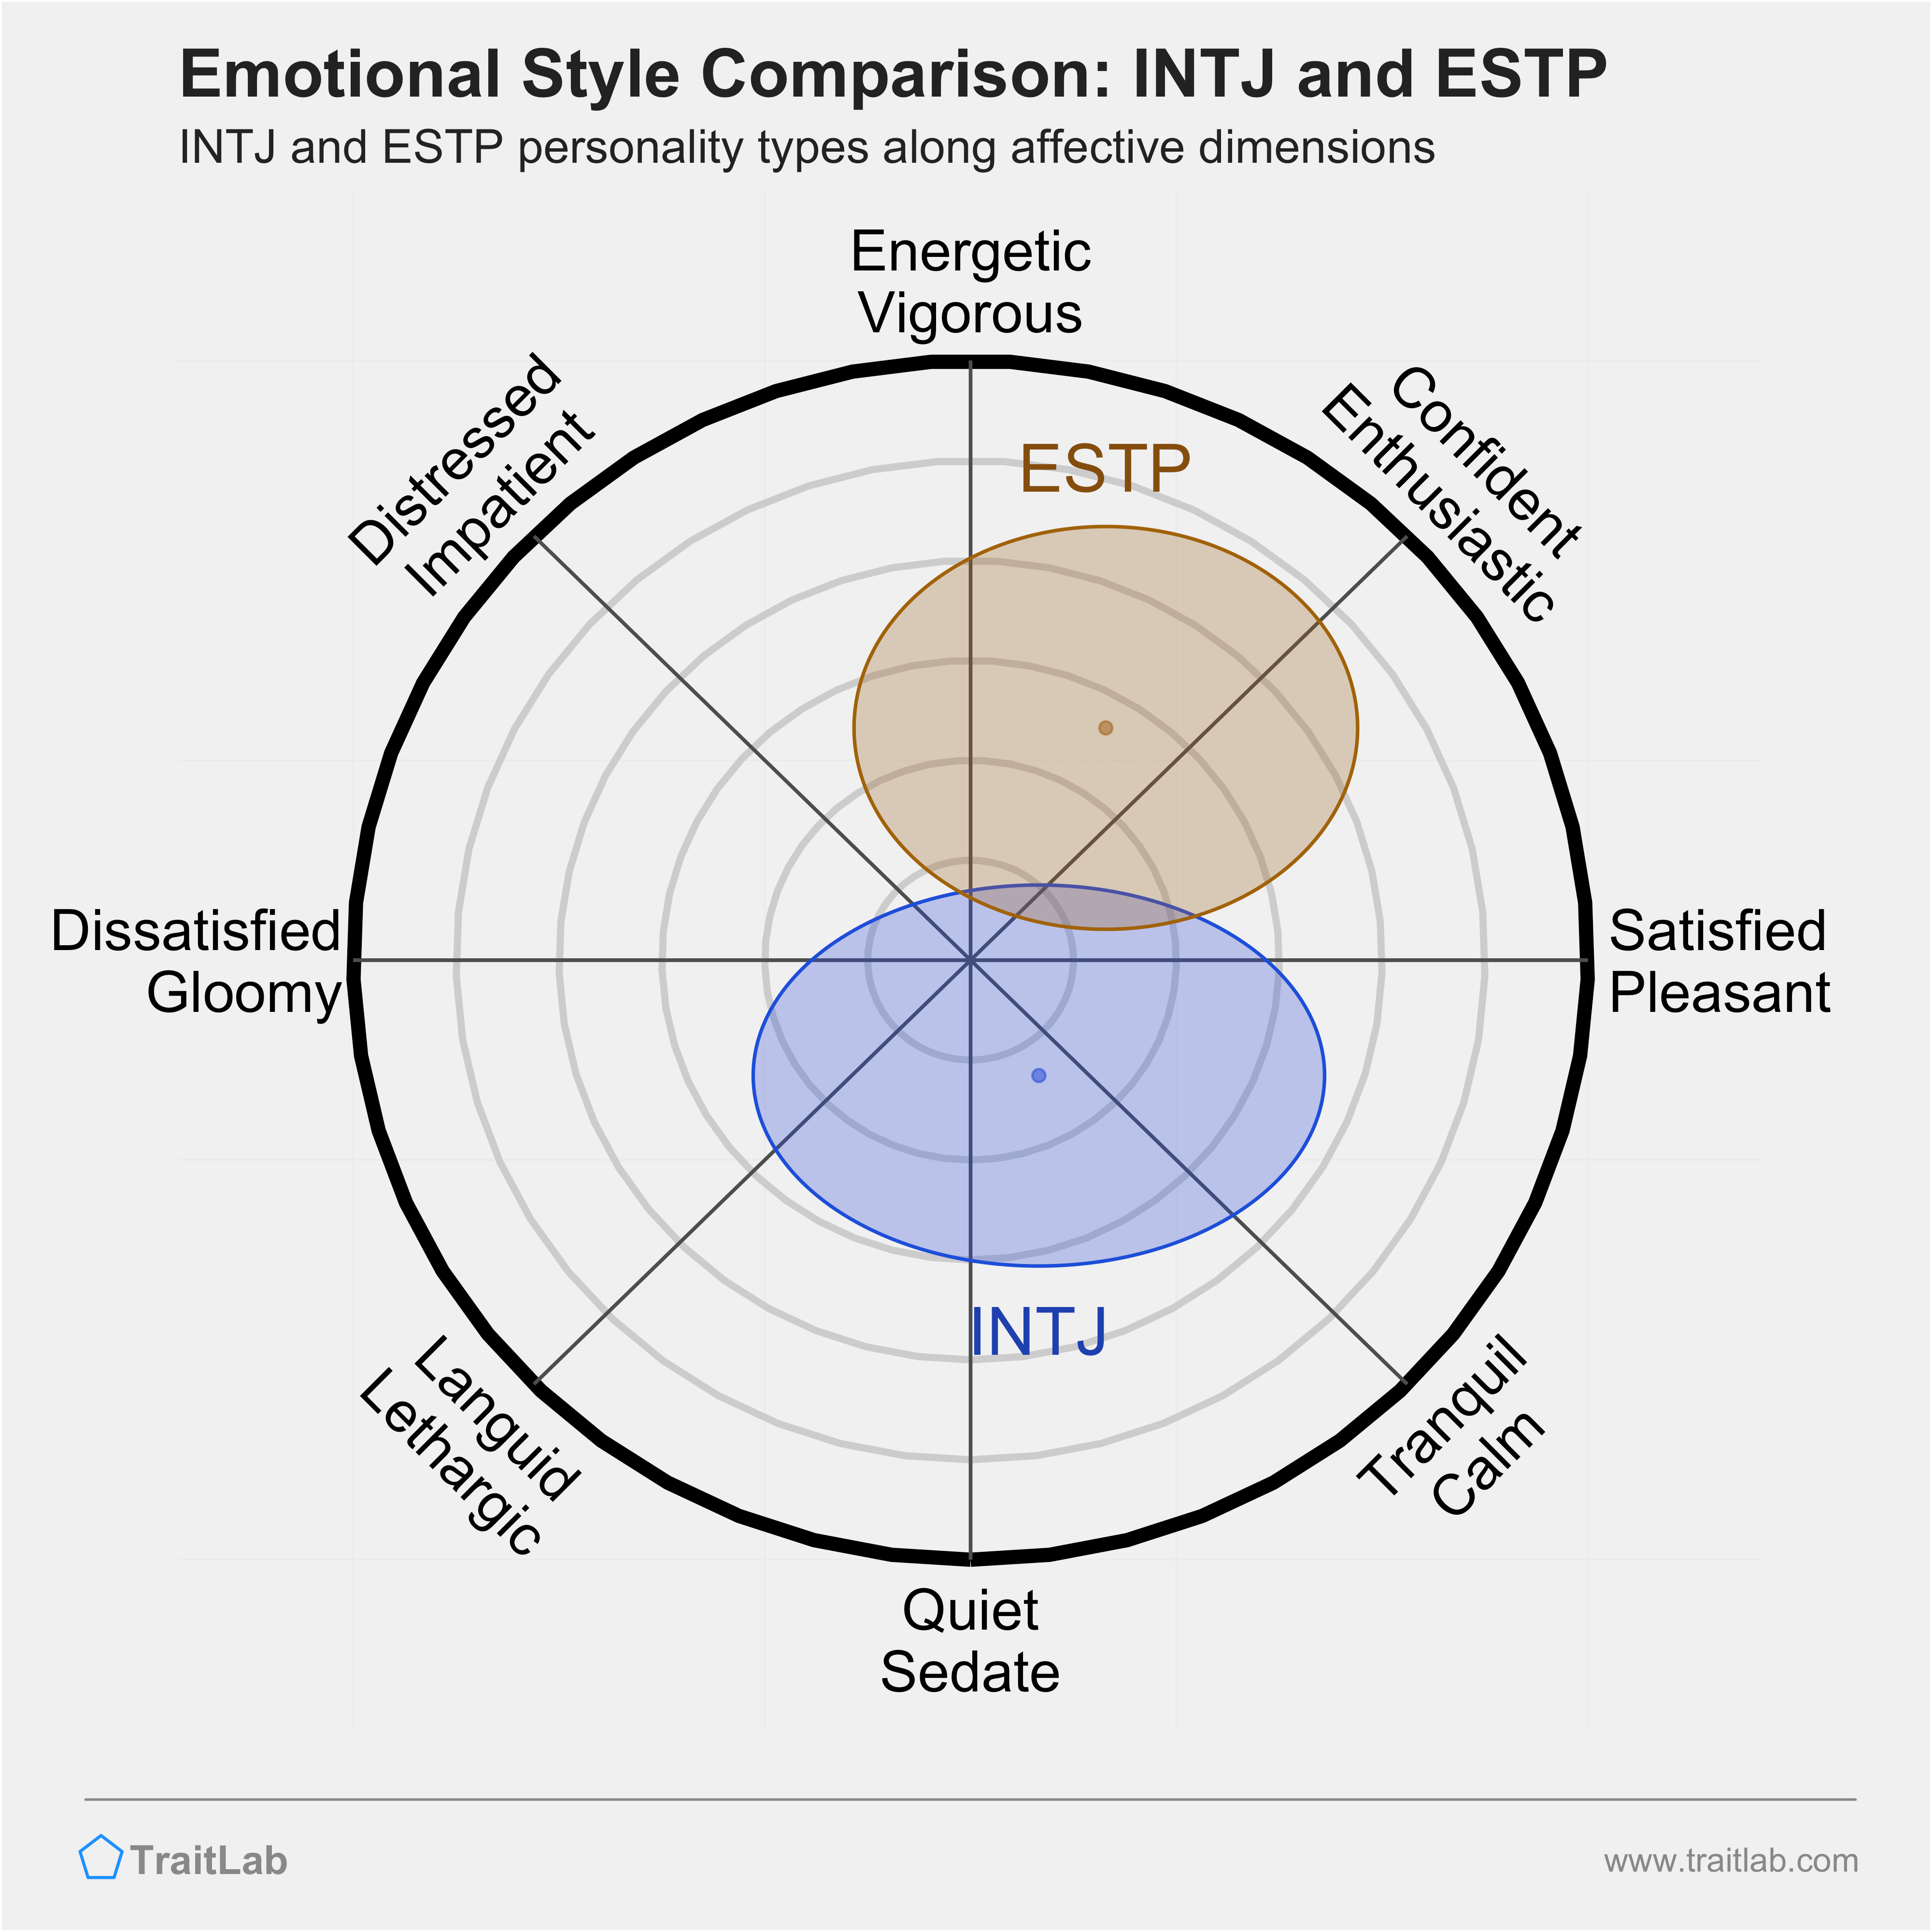 INTJ and ESTP comparison across emotional (affective) dimensions